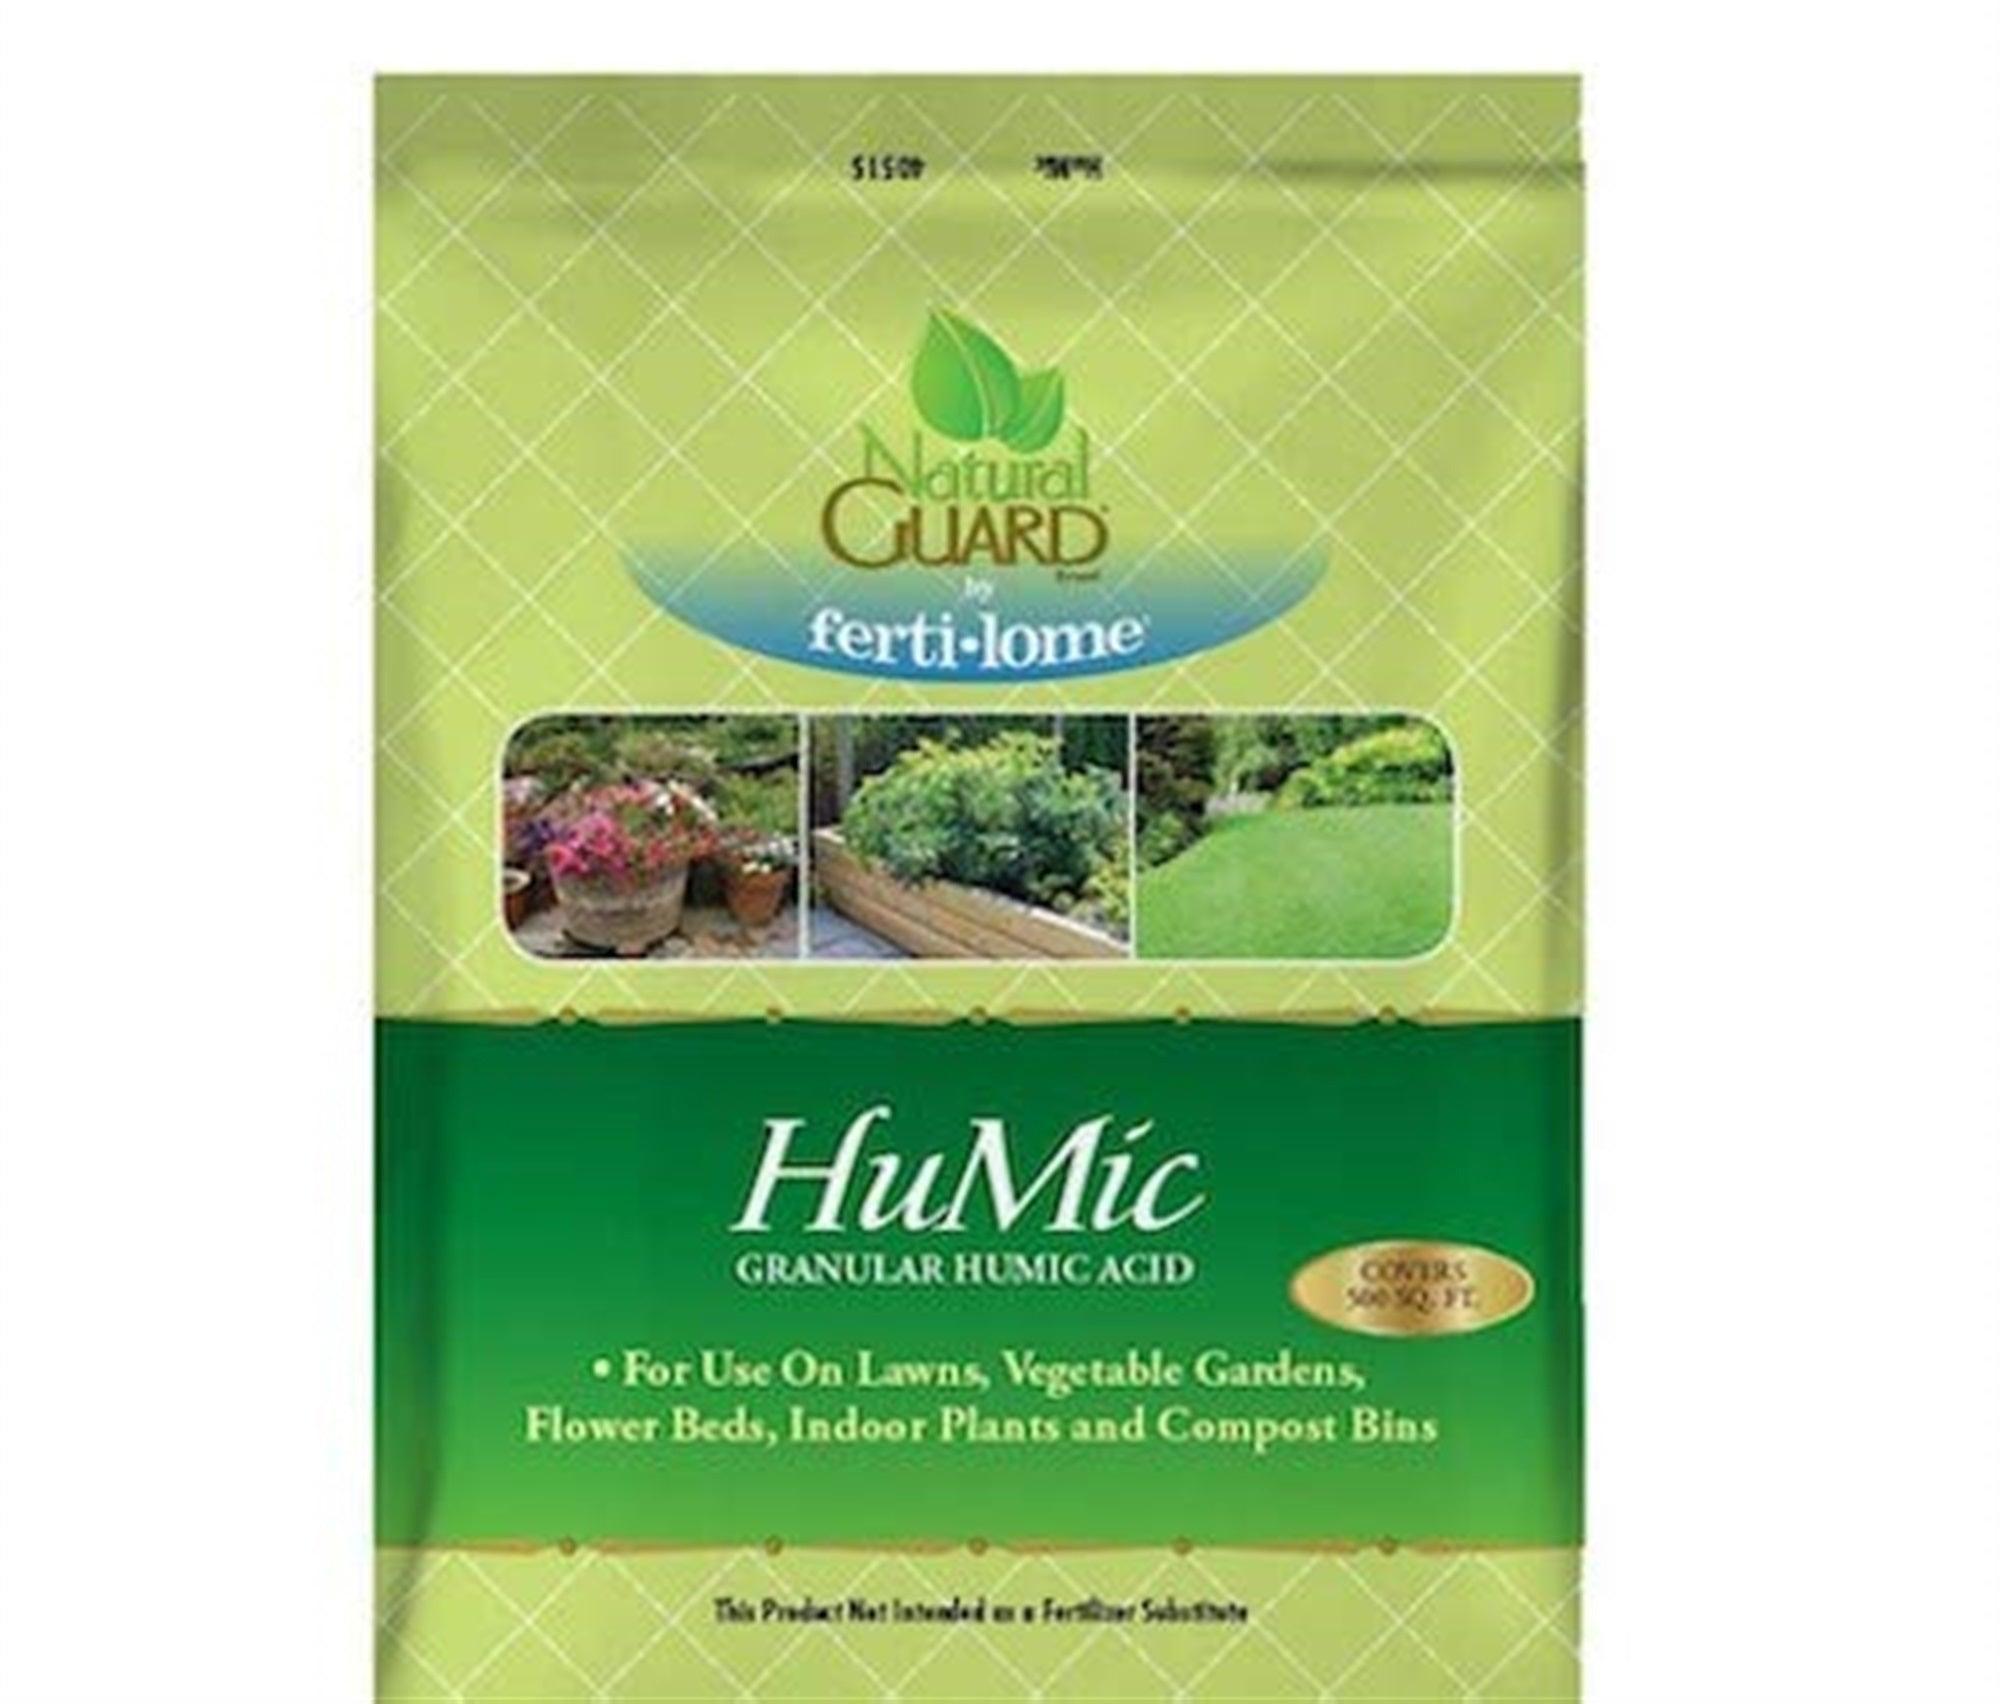 Natural Guard HuMic Granular Humic Acid, 4 Pounds